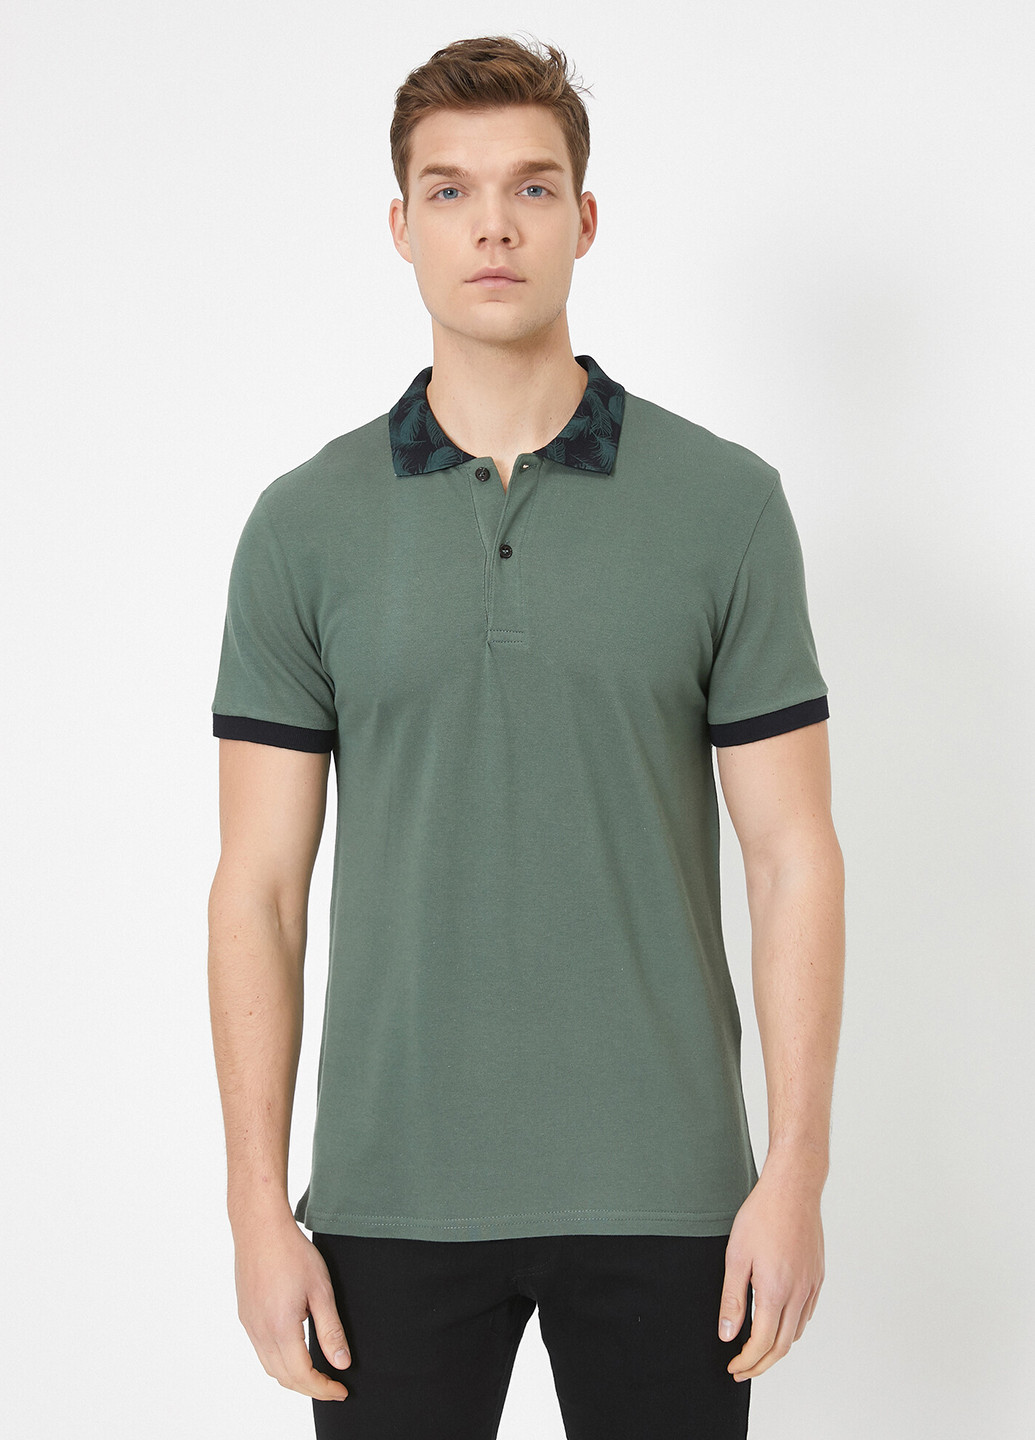 Серо-зеленая футболка-поло для мужчин KOTON однотонная